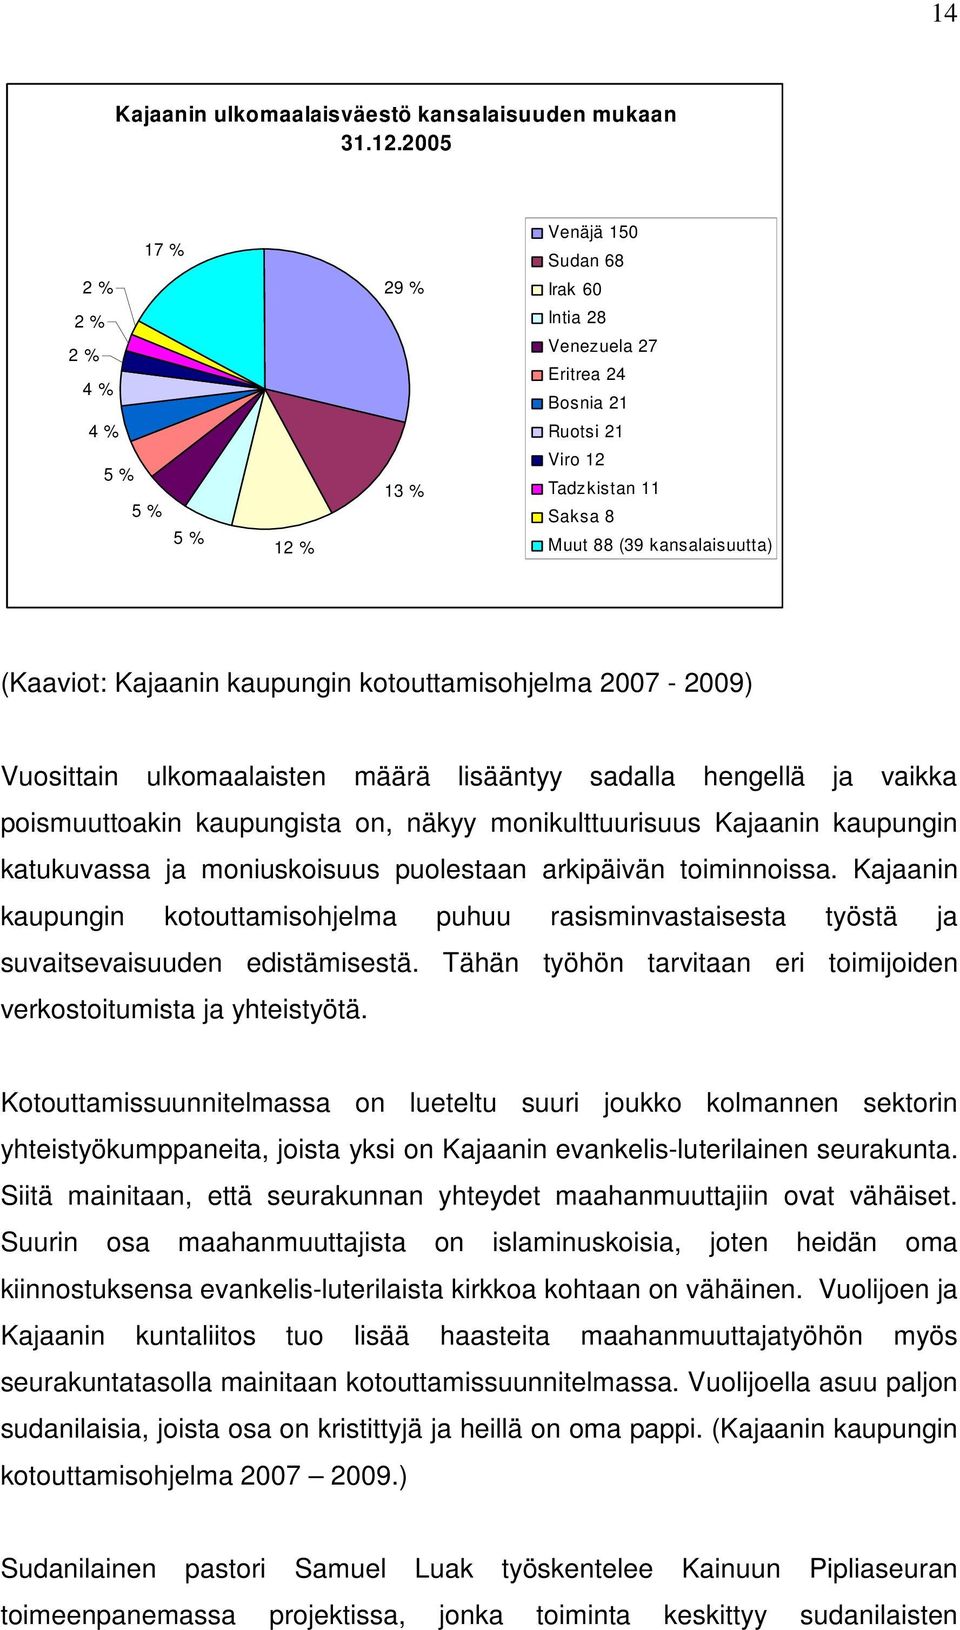 (Kaaviot: Kajaanin kaupungin kotouttamisohjelma 2007-2009) Vuosittain ulkomaalaisten määrä lisääntyy sadalla hengellä ja vaikka poismuuttoakin kaupungista on, näkyy monikulttuurisuus Kajaanin